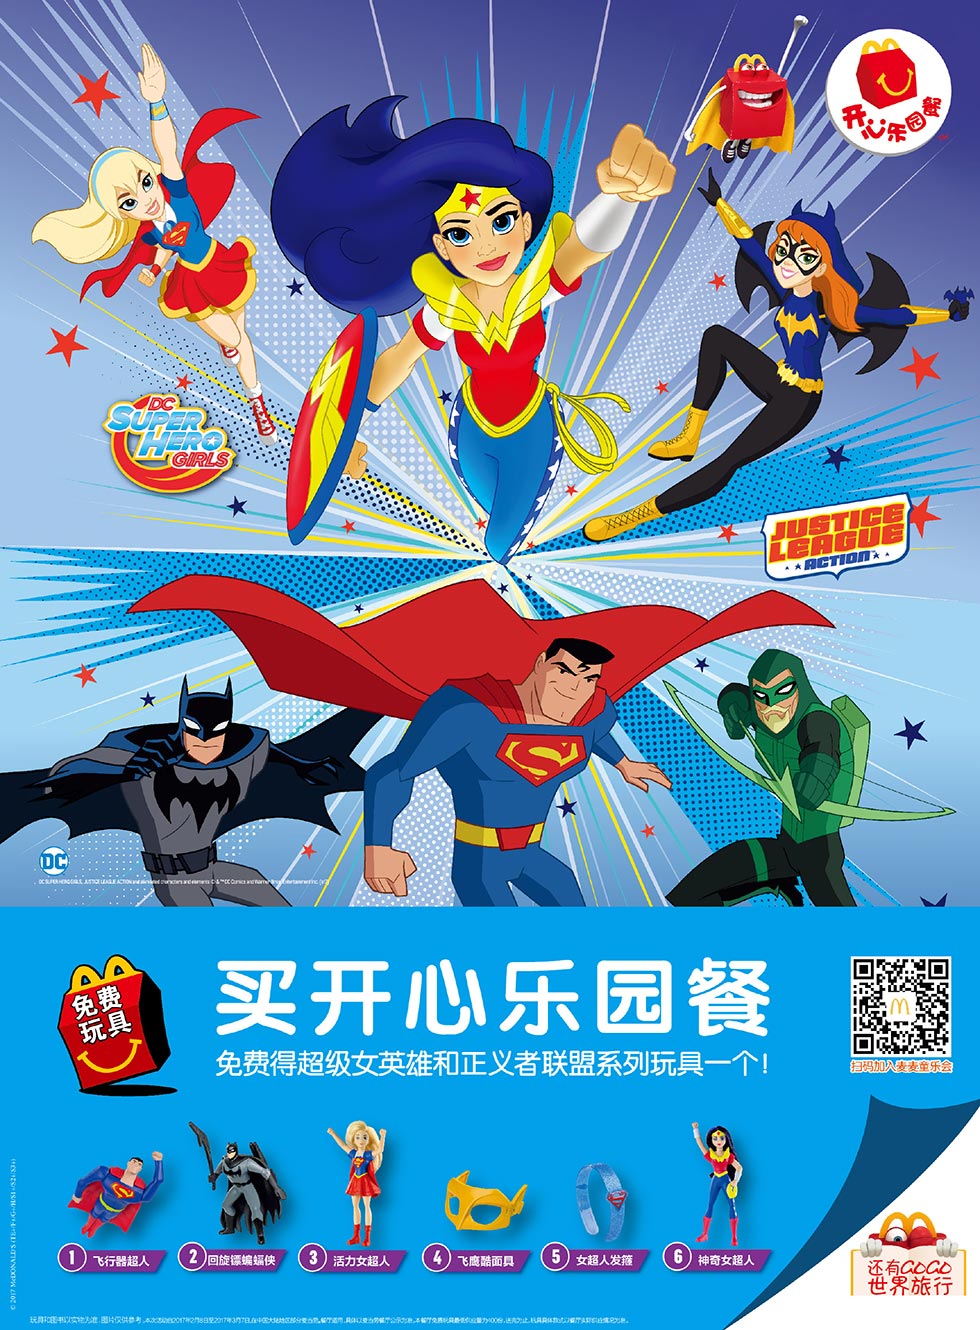 麦当劳儿童餐免费送超级女英雄和正义者联盟玩具